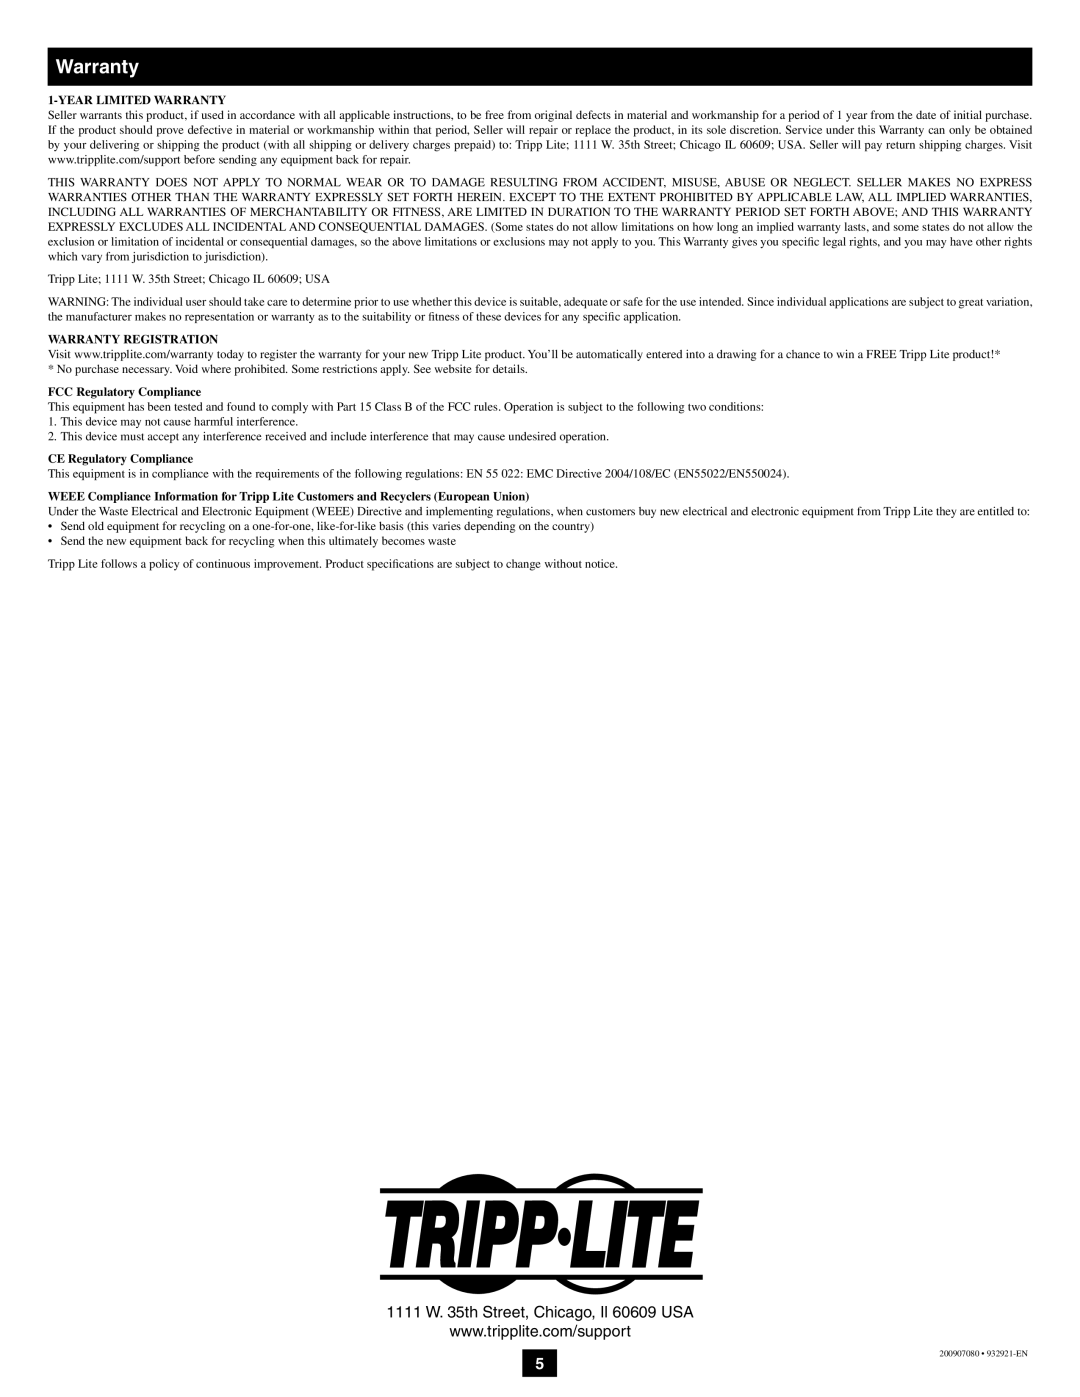 Tripp Lite U230-204-R owner manual Year Limited Warranty, Warranty Registration, FCC Regulatory Compliance 